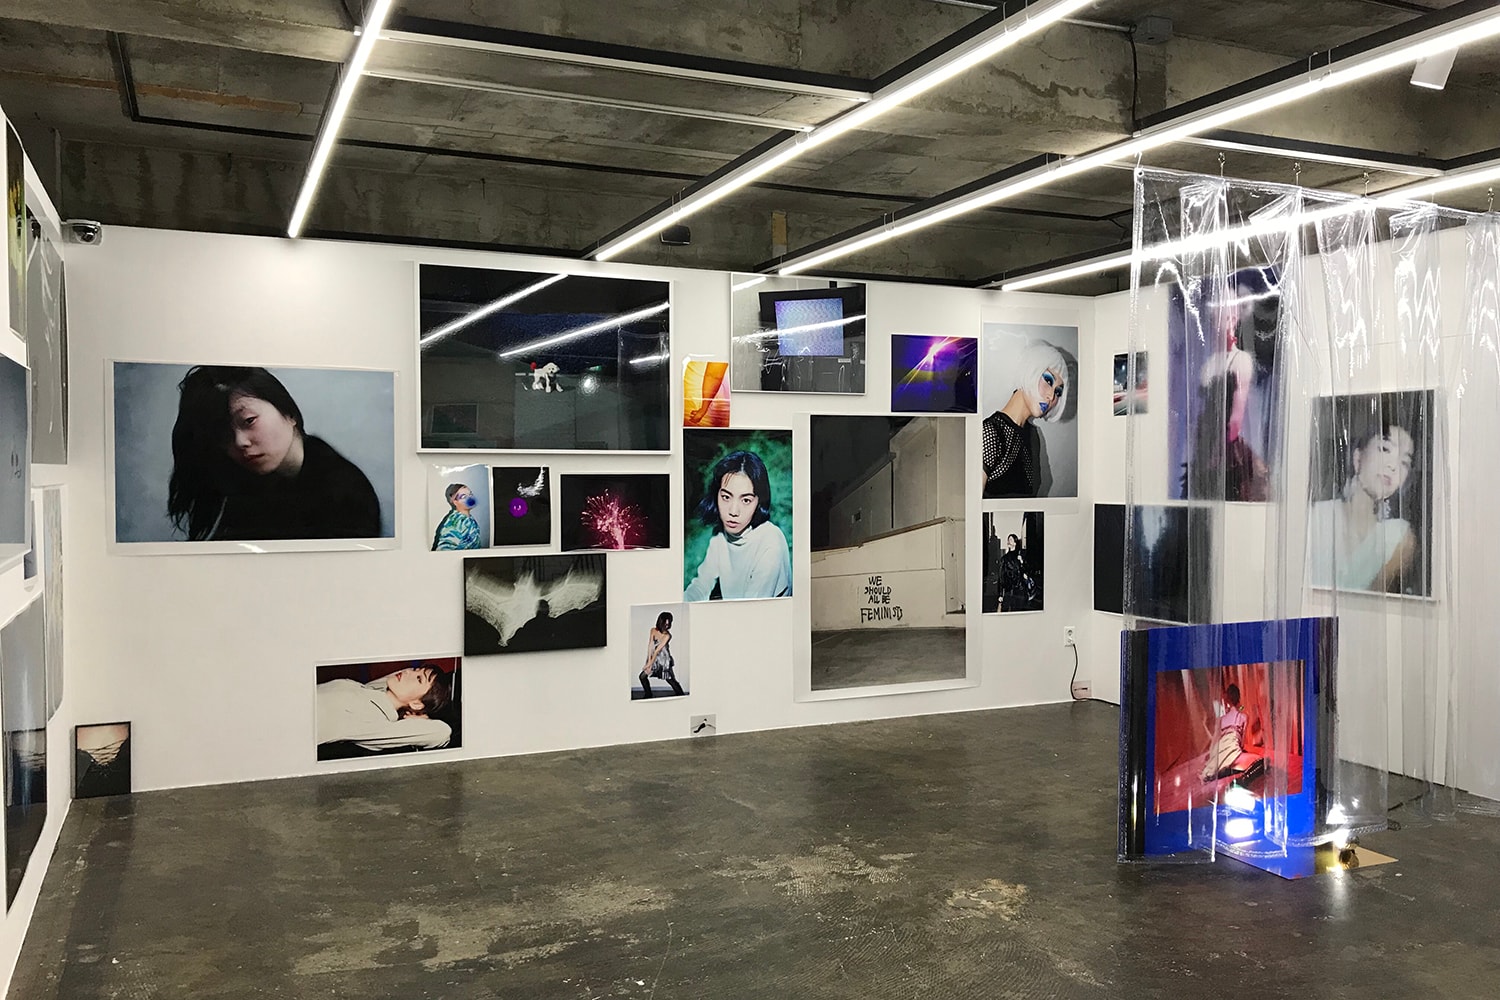 플랫폼플레이스 이강혁 사진 전시 스네이크 풀 다운 더 래빗 홀 2017 platform place kanghyuk lee exhibition snakepool down the rabbit hole photography